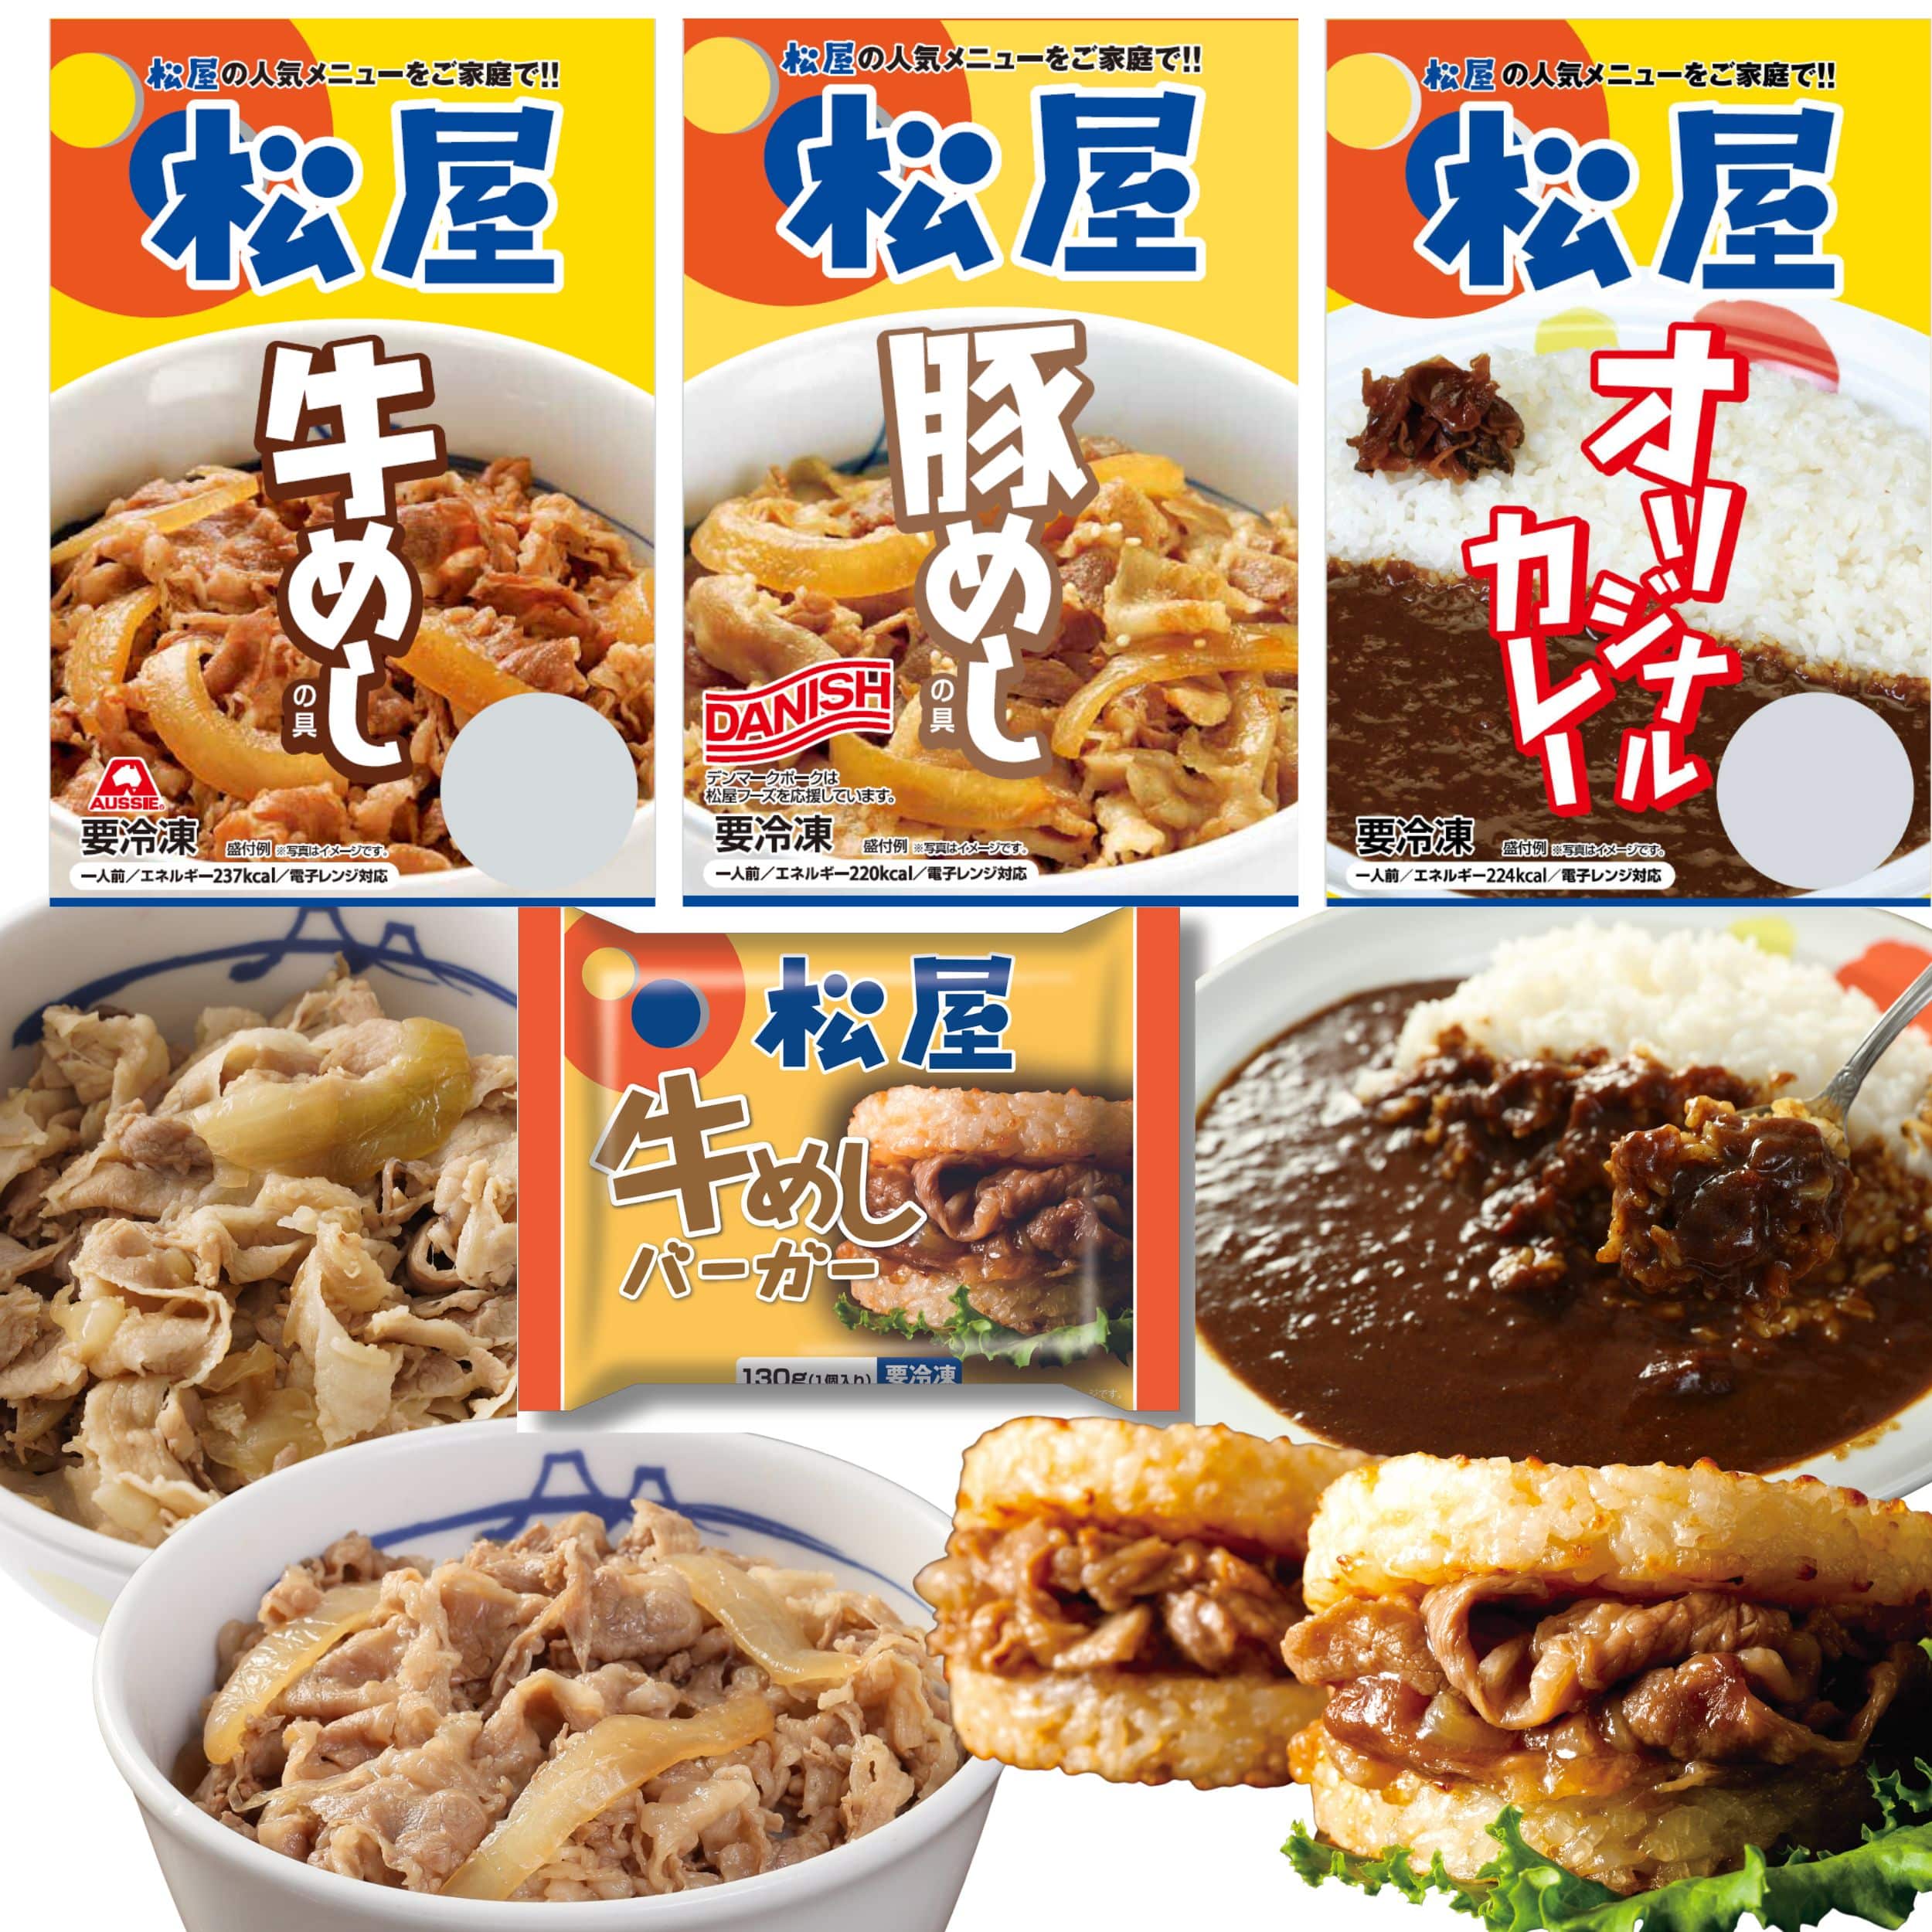 松屋 牛丼 ぎゅうどん 牛丼の具 ぎゅうどんのぐ 冷凍食品 セール